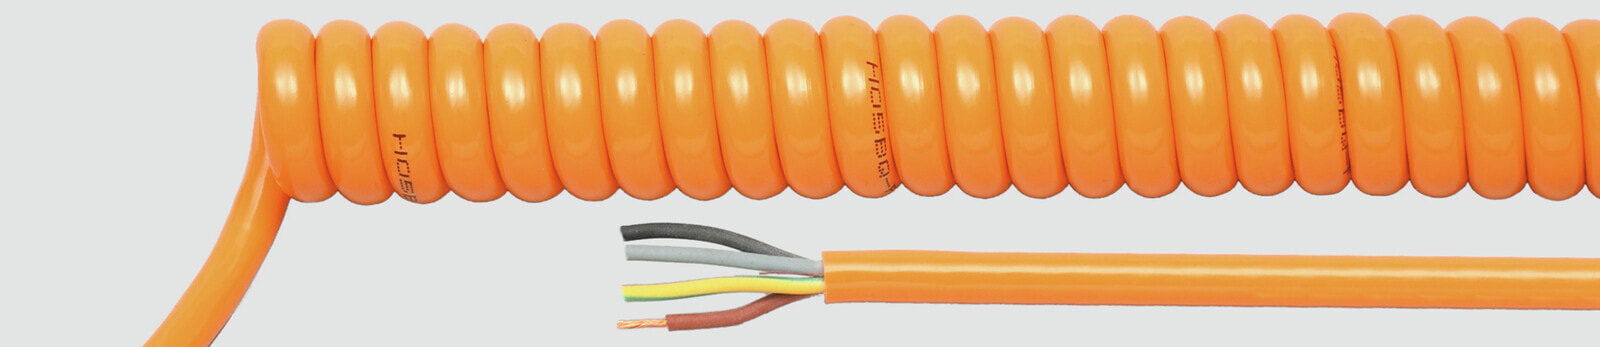 Helukabel 85323 - Low voltage cable - Orange - Cooper - 1 mm² - 130.6 kg/km - -25 - 70 °C